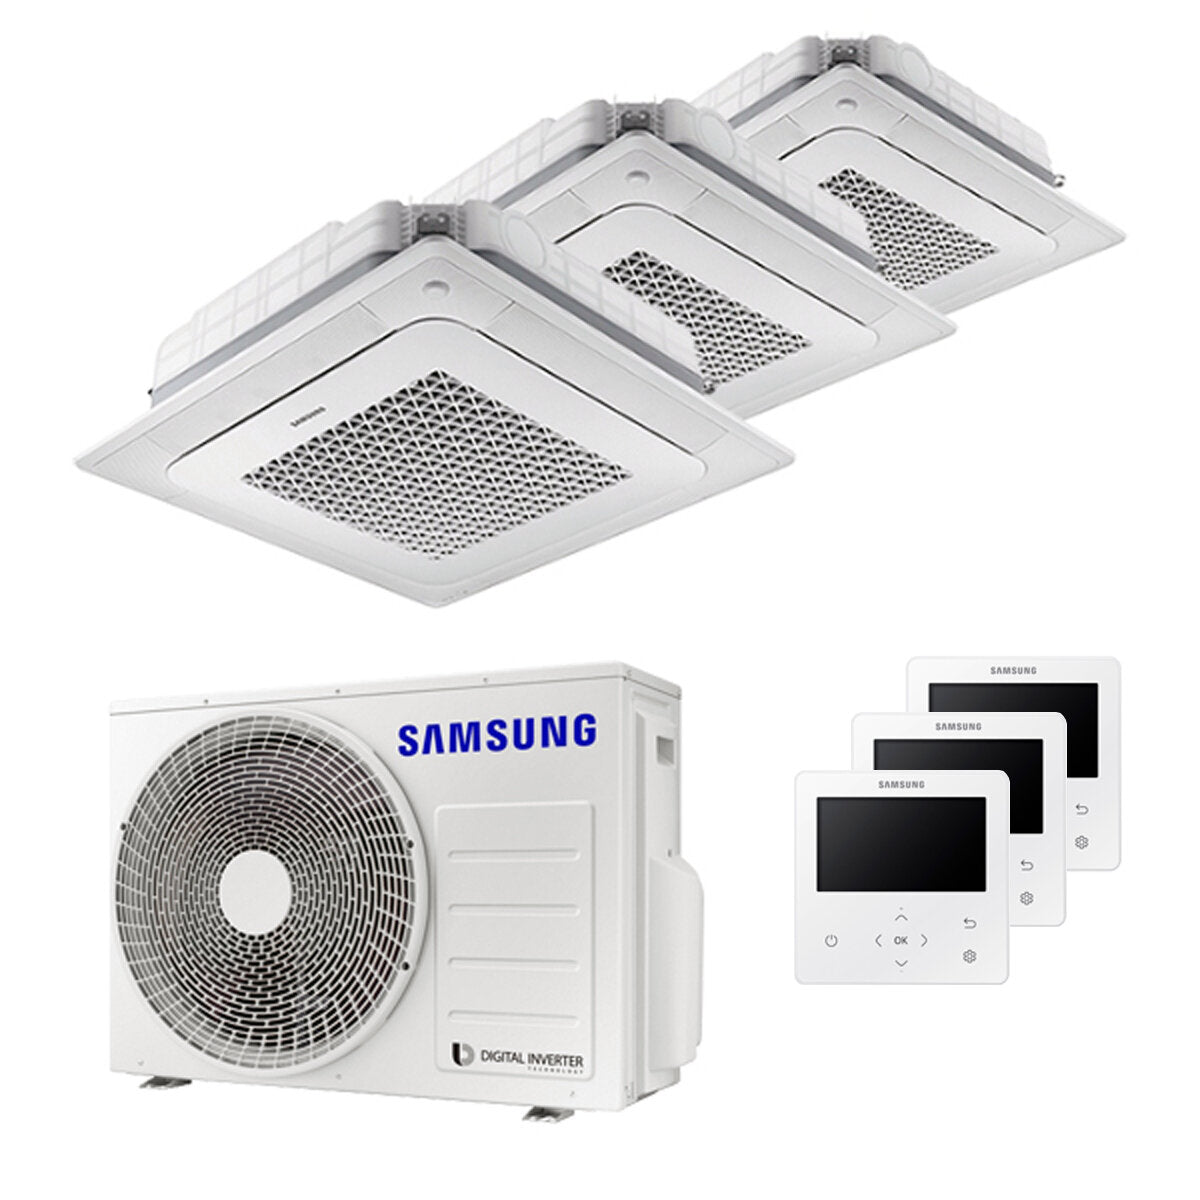 Samsung Air conditioner Windfree 4-way trial split 7000 + 9000 + 12000 BTU inverter A +++ outdoor unit 5.2 kW